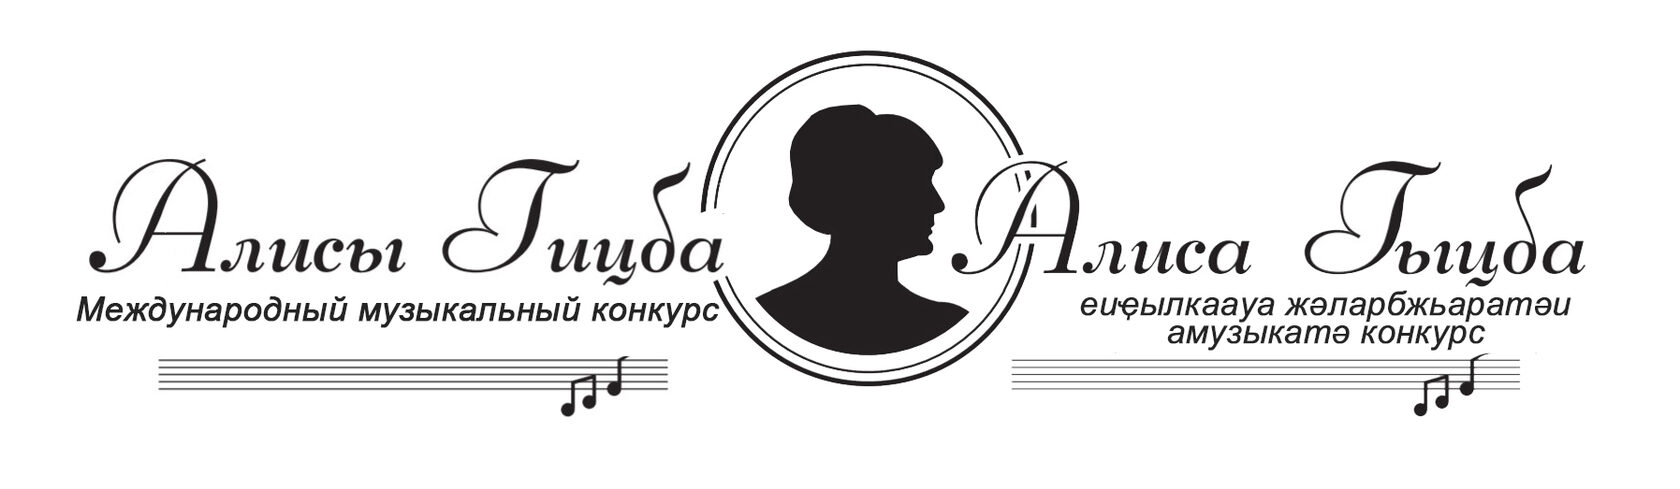 Международный музыкальный конкурс Алисы Гицба